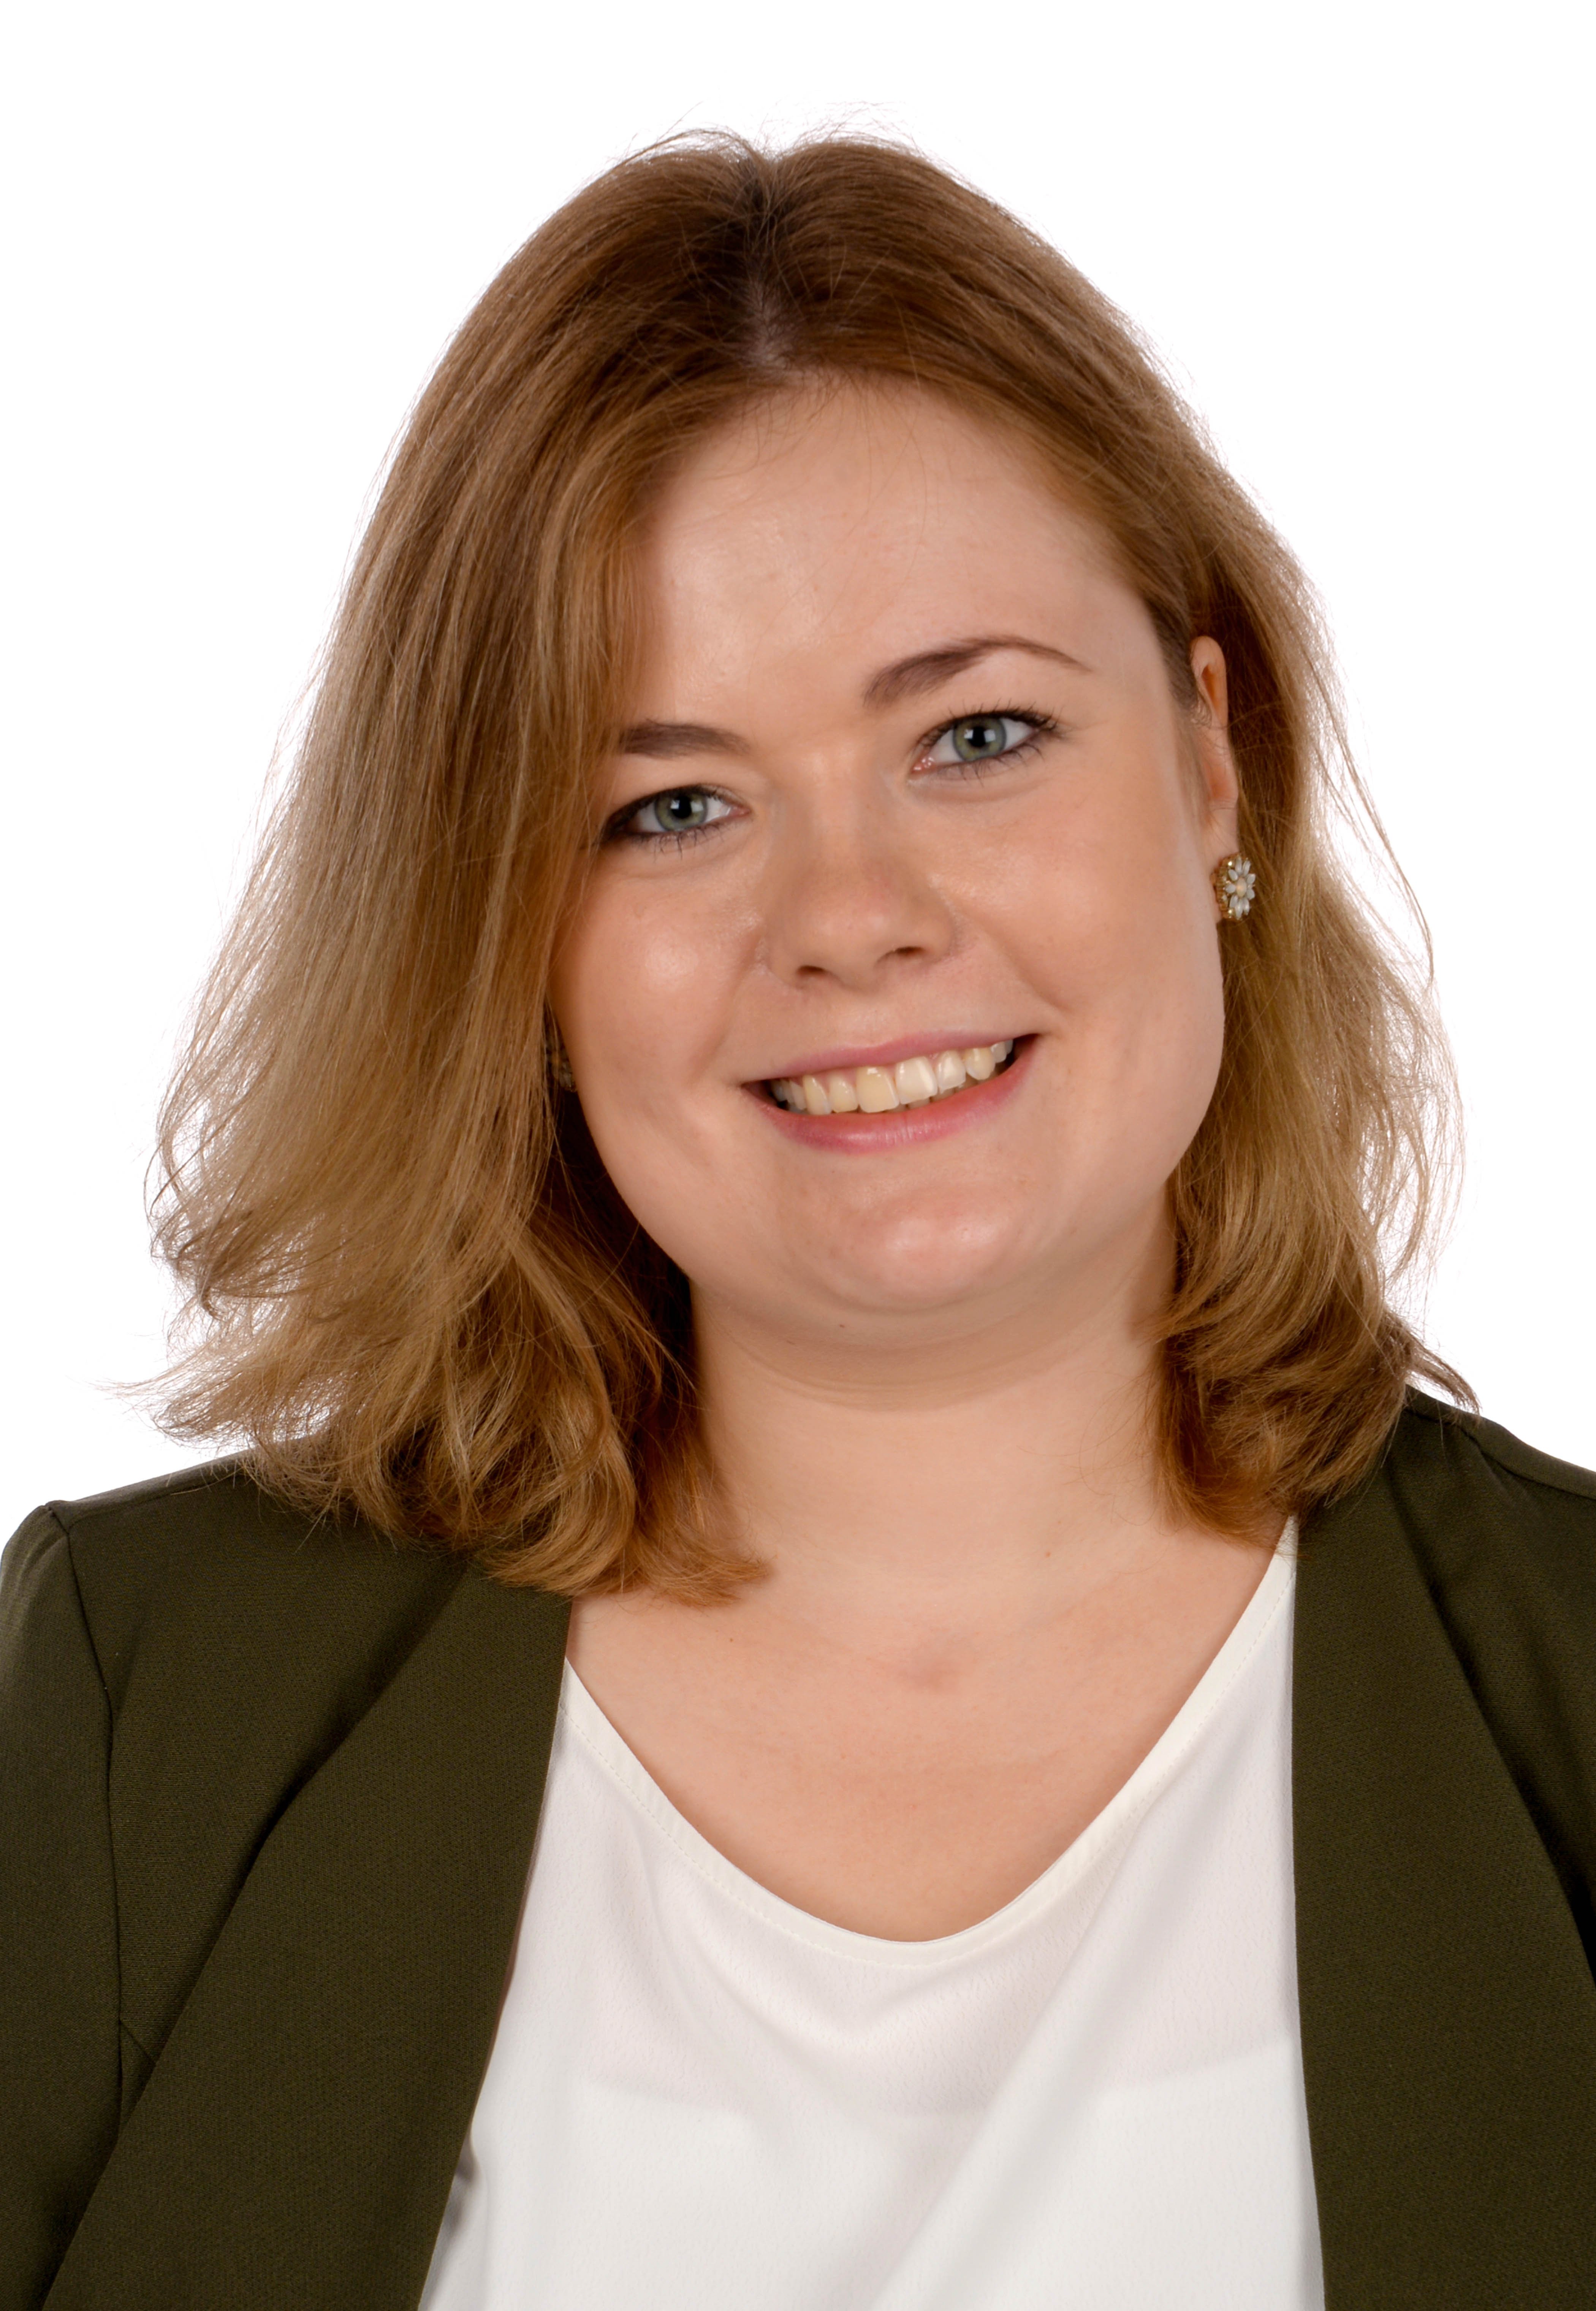 Fabienne Tegelkamp, Gesundheits- und Krankenpflegerin, berät in der Angehörigenberatung und ist Mitglied des Delir-Präventionsteams./ UKM